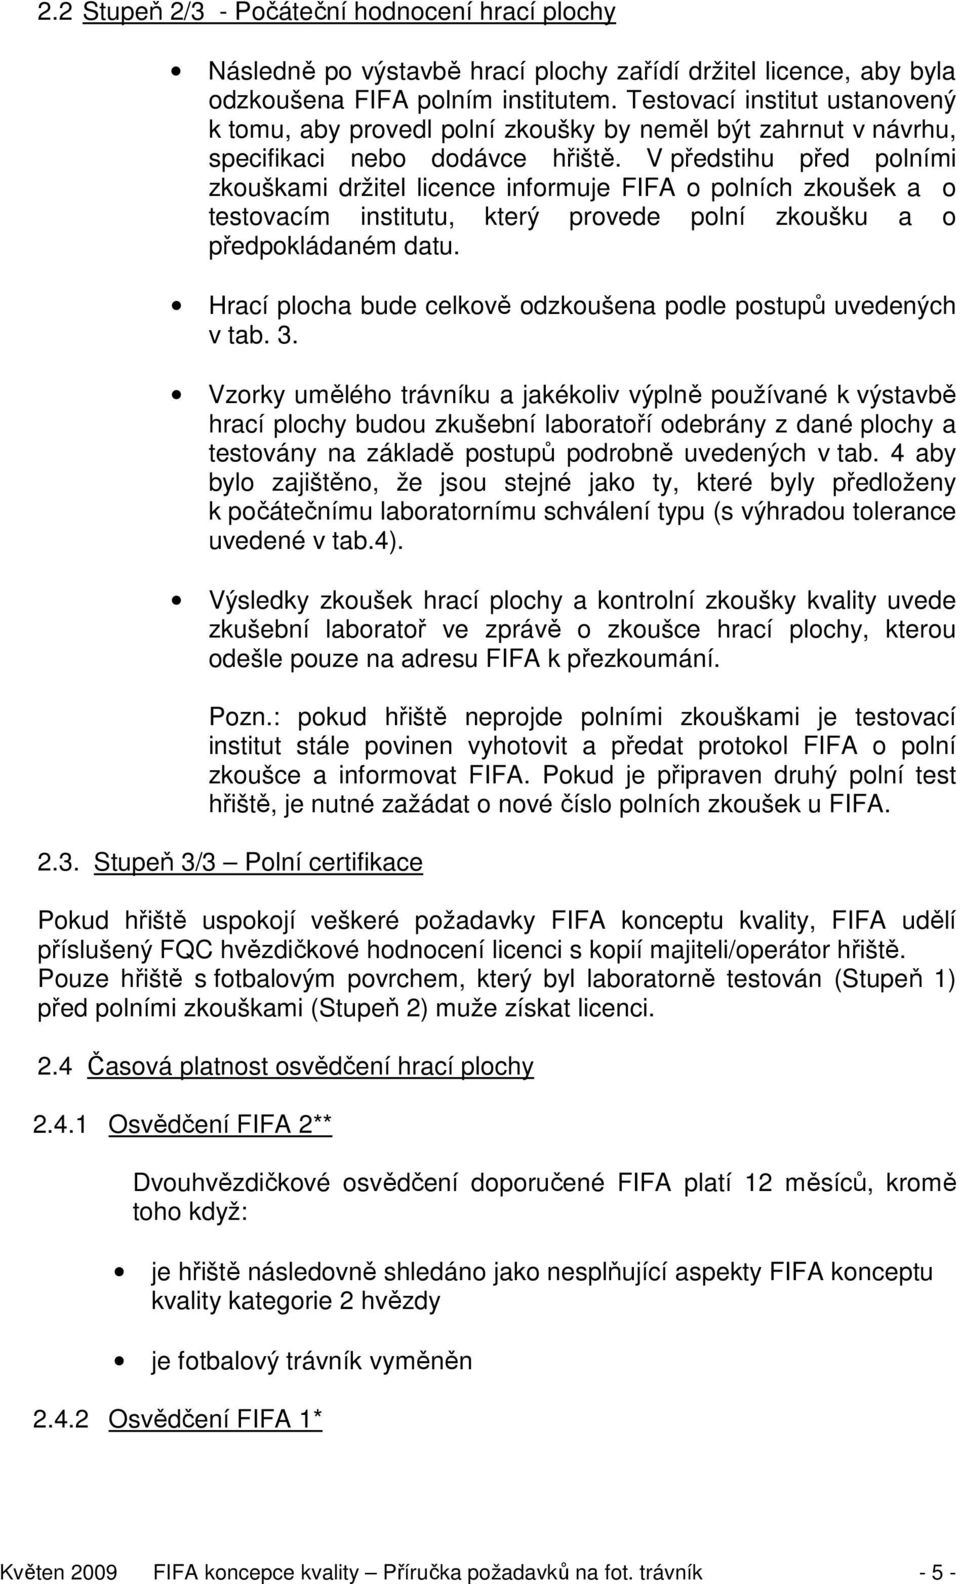 V předstihu před polními zkouškami držitel licence informuje FIFA o polních zkoušek a o testovacím institutu, který provede polní zkoušku a o předpokládaném datu.